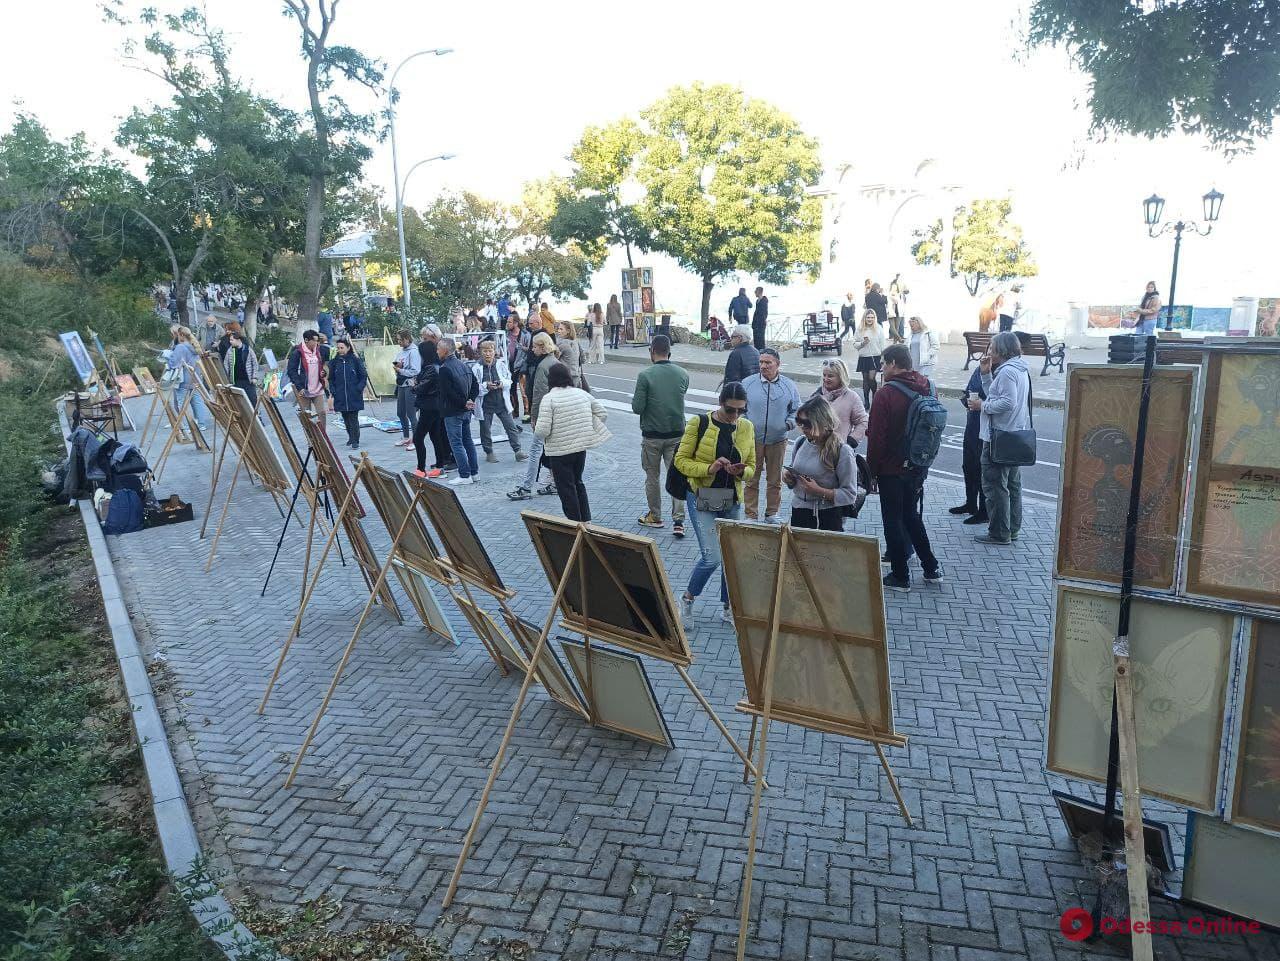 На Трассе здоровья открылась художественная выставка под открытым небом — работы можно купить (фото)